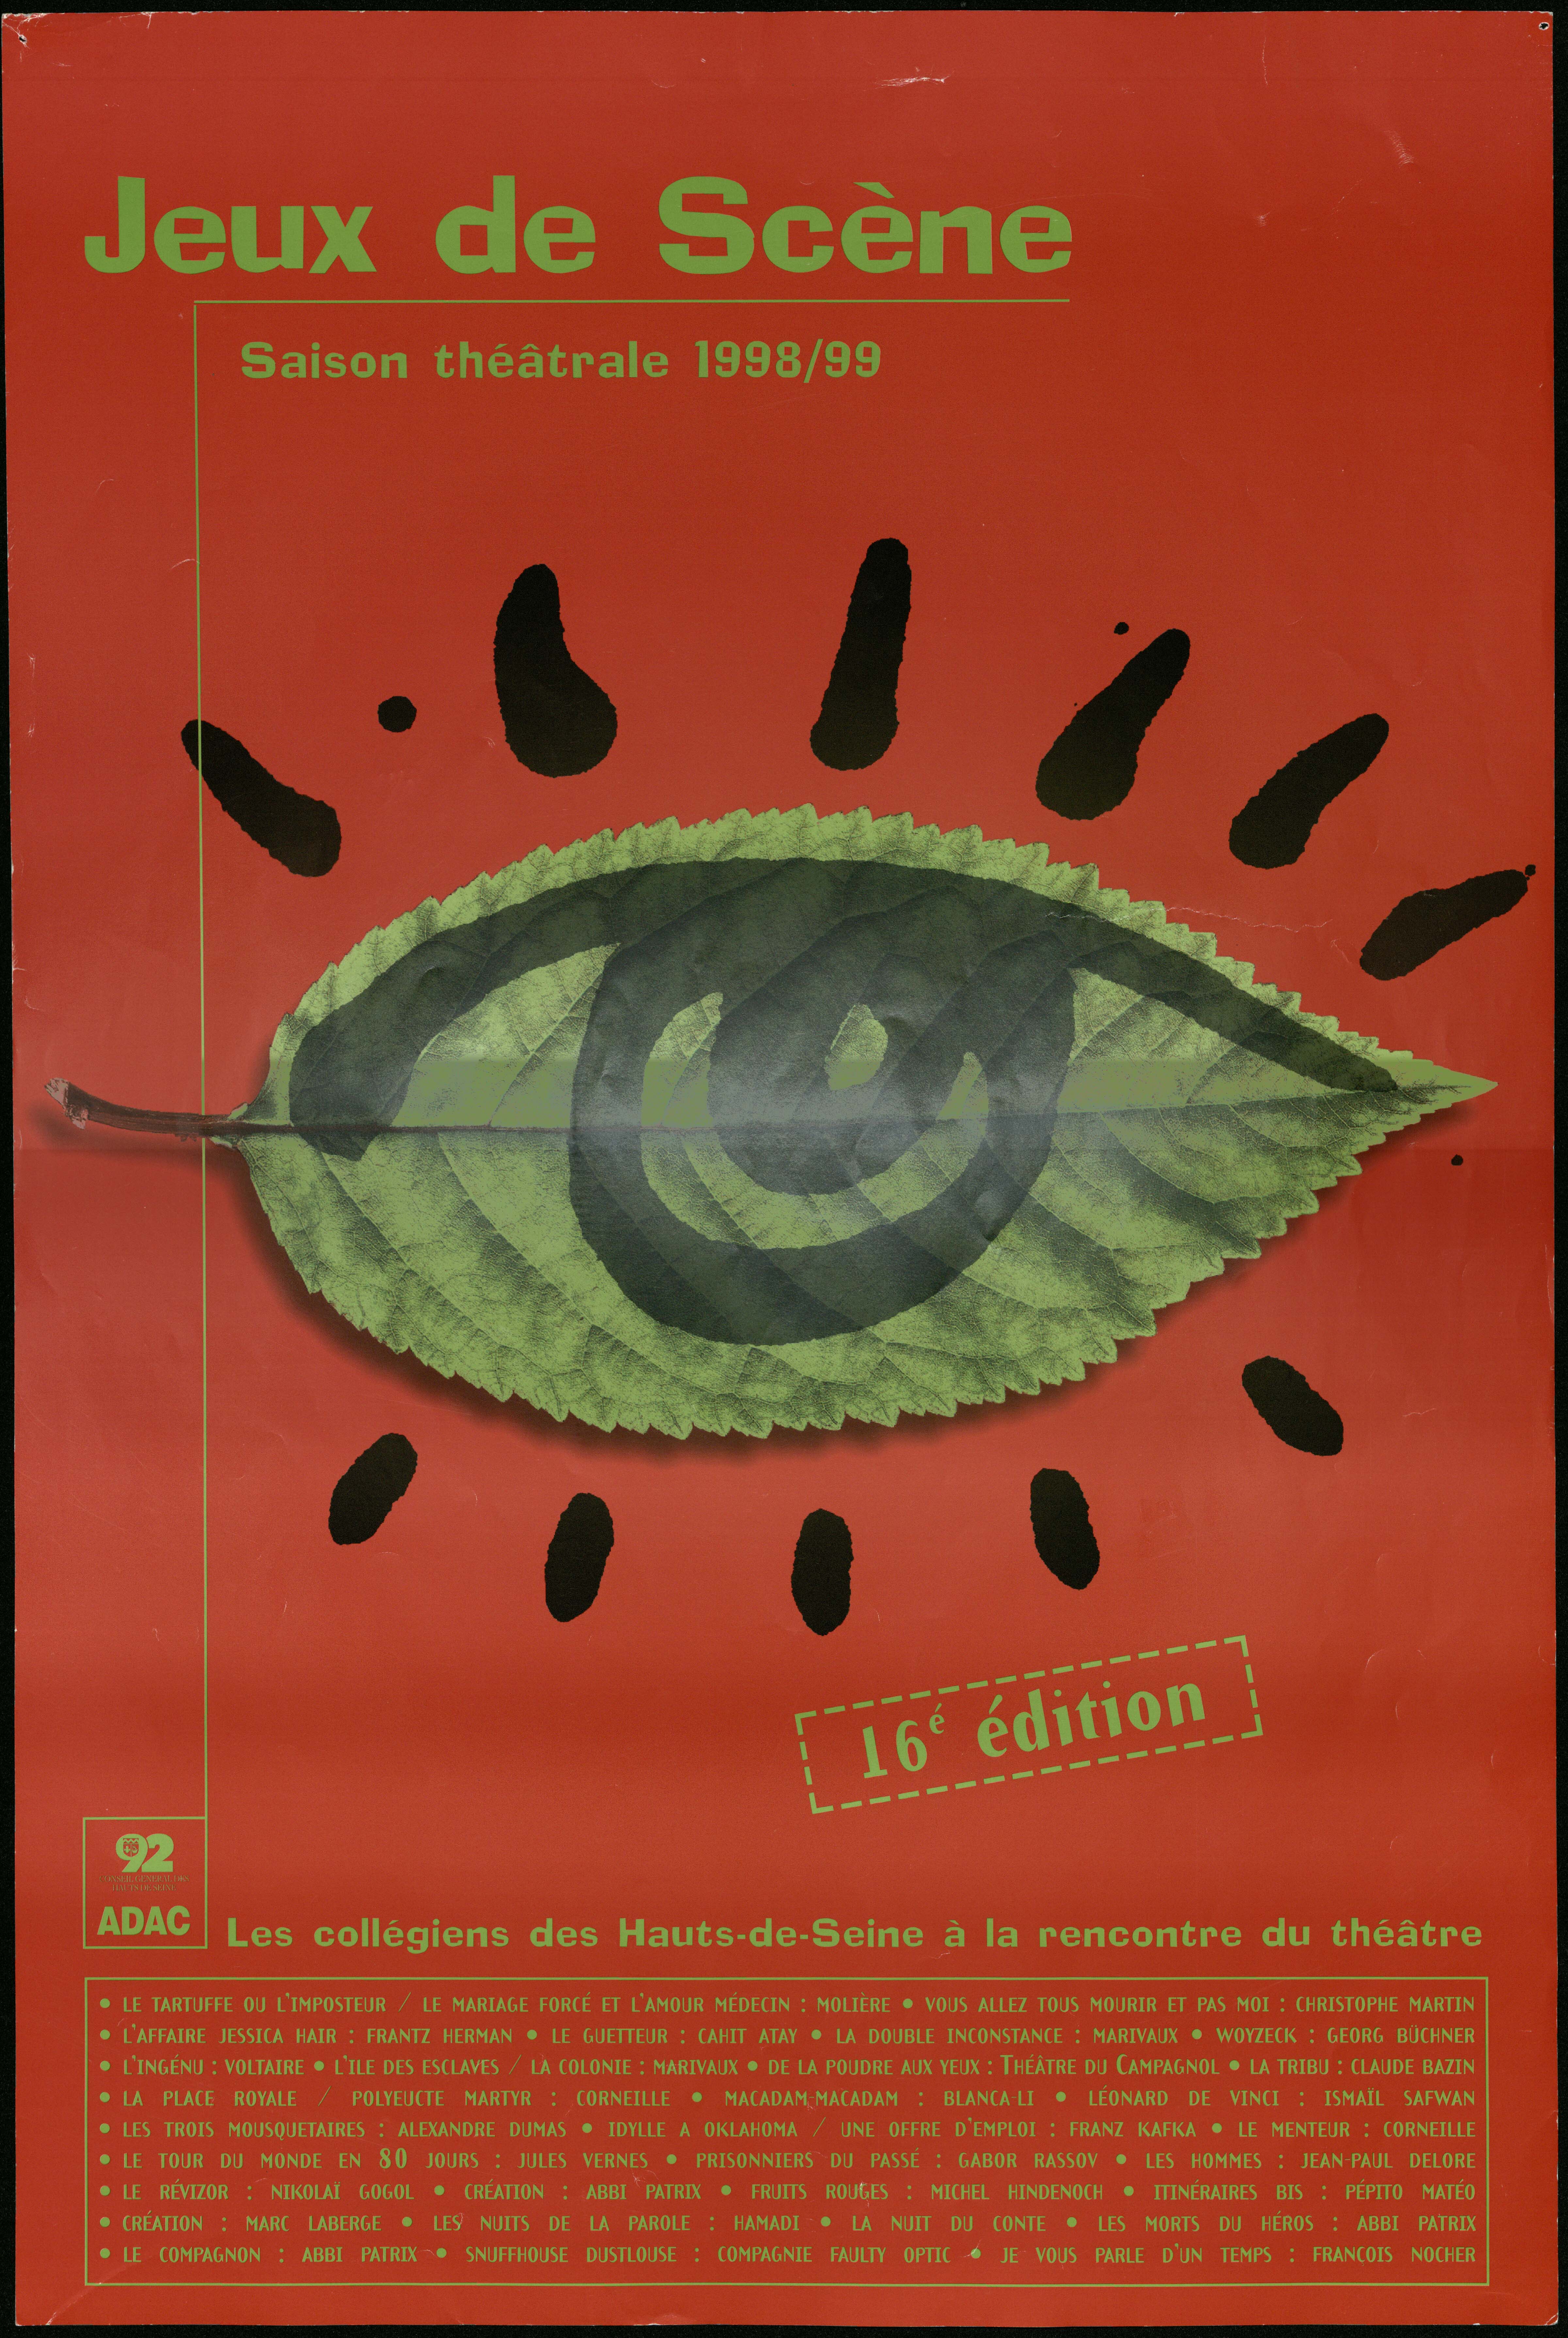 Jeux de scène, saison théâtrale 1998-1999, 16e édition. Les collégiens des Hauts-de-Seine à la rencontre du théâtre. - CG 92, 1998. - 1 affiche ill. coul.,   60 x 40 cm.